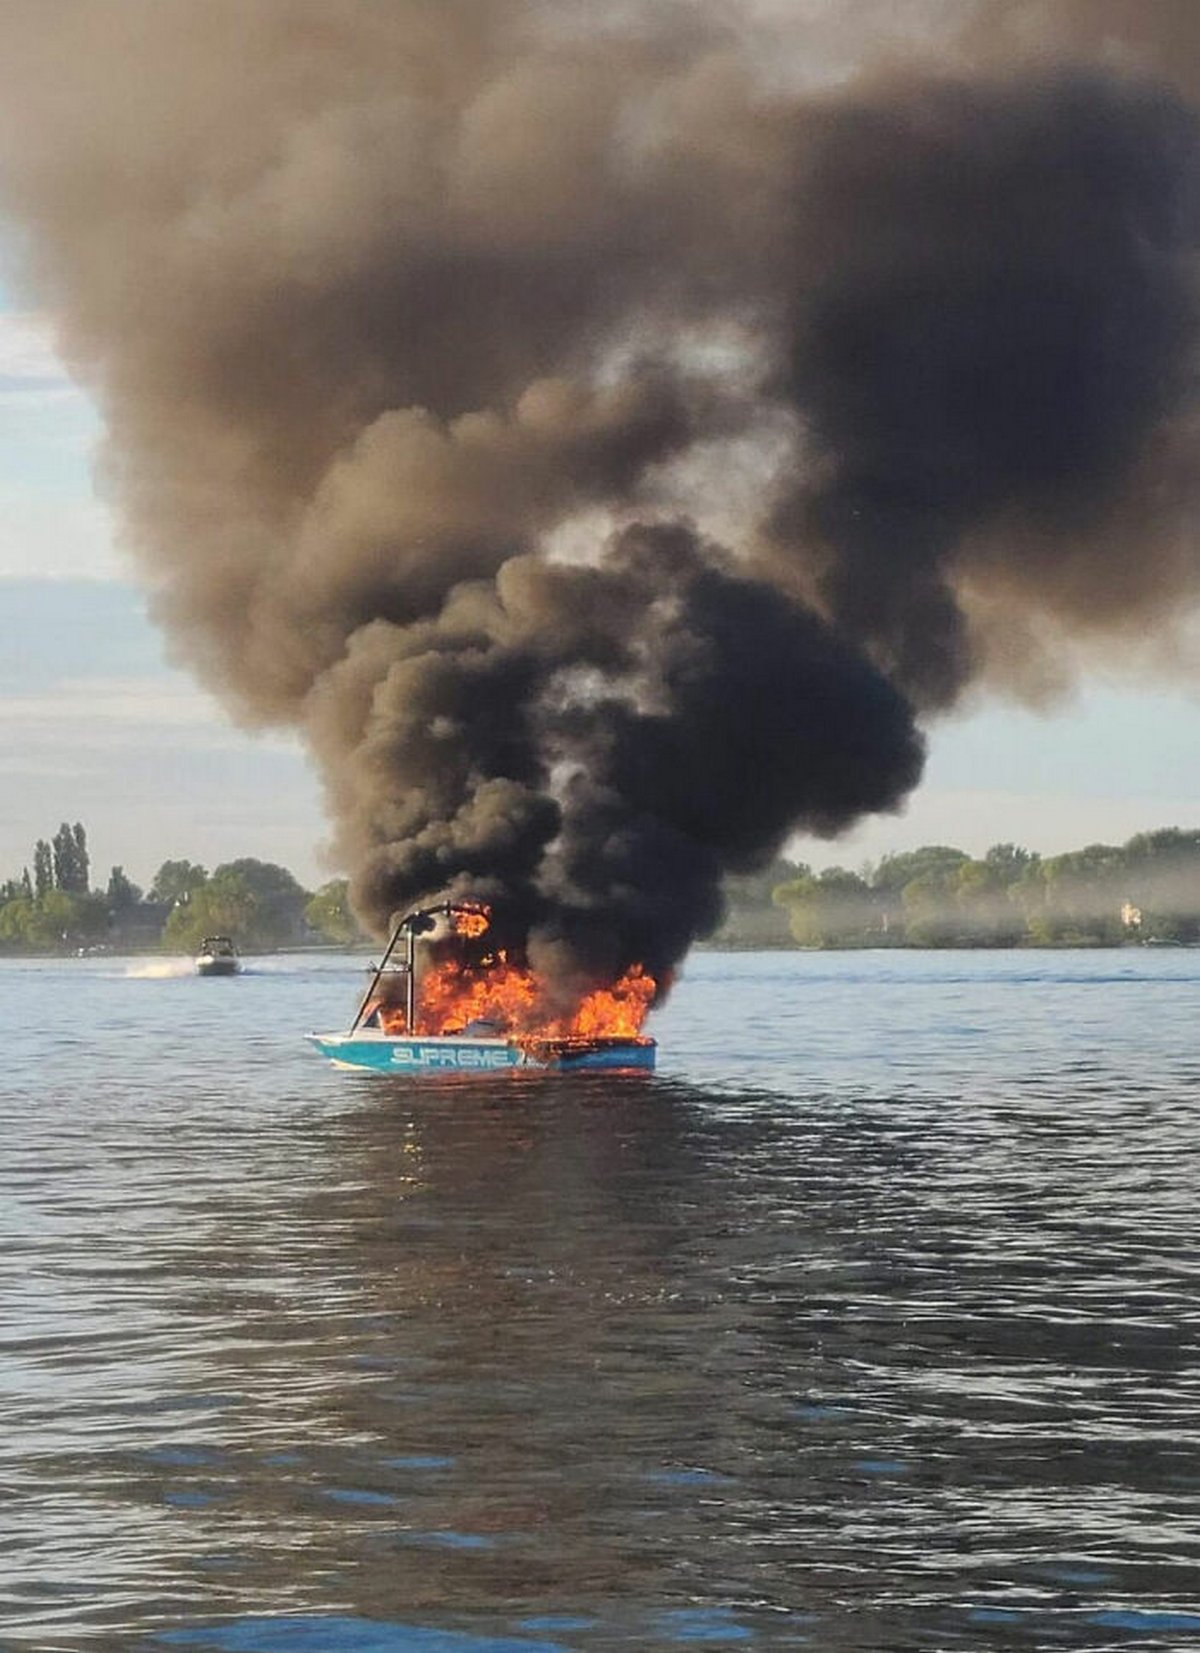 Des homophobes en détresse nagent vers le bateau des personnes LGBT qu’ils venaient de harceler après l’explosion de leur propre bateau